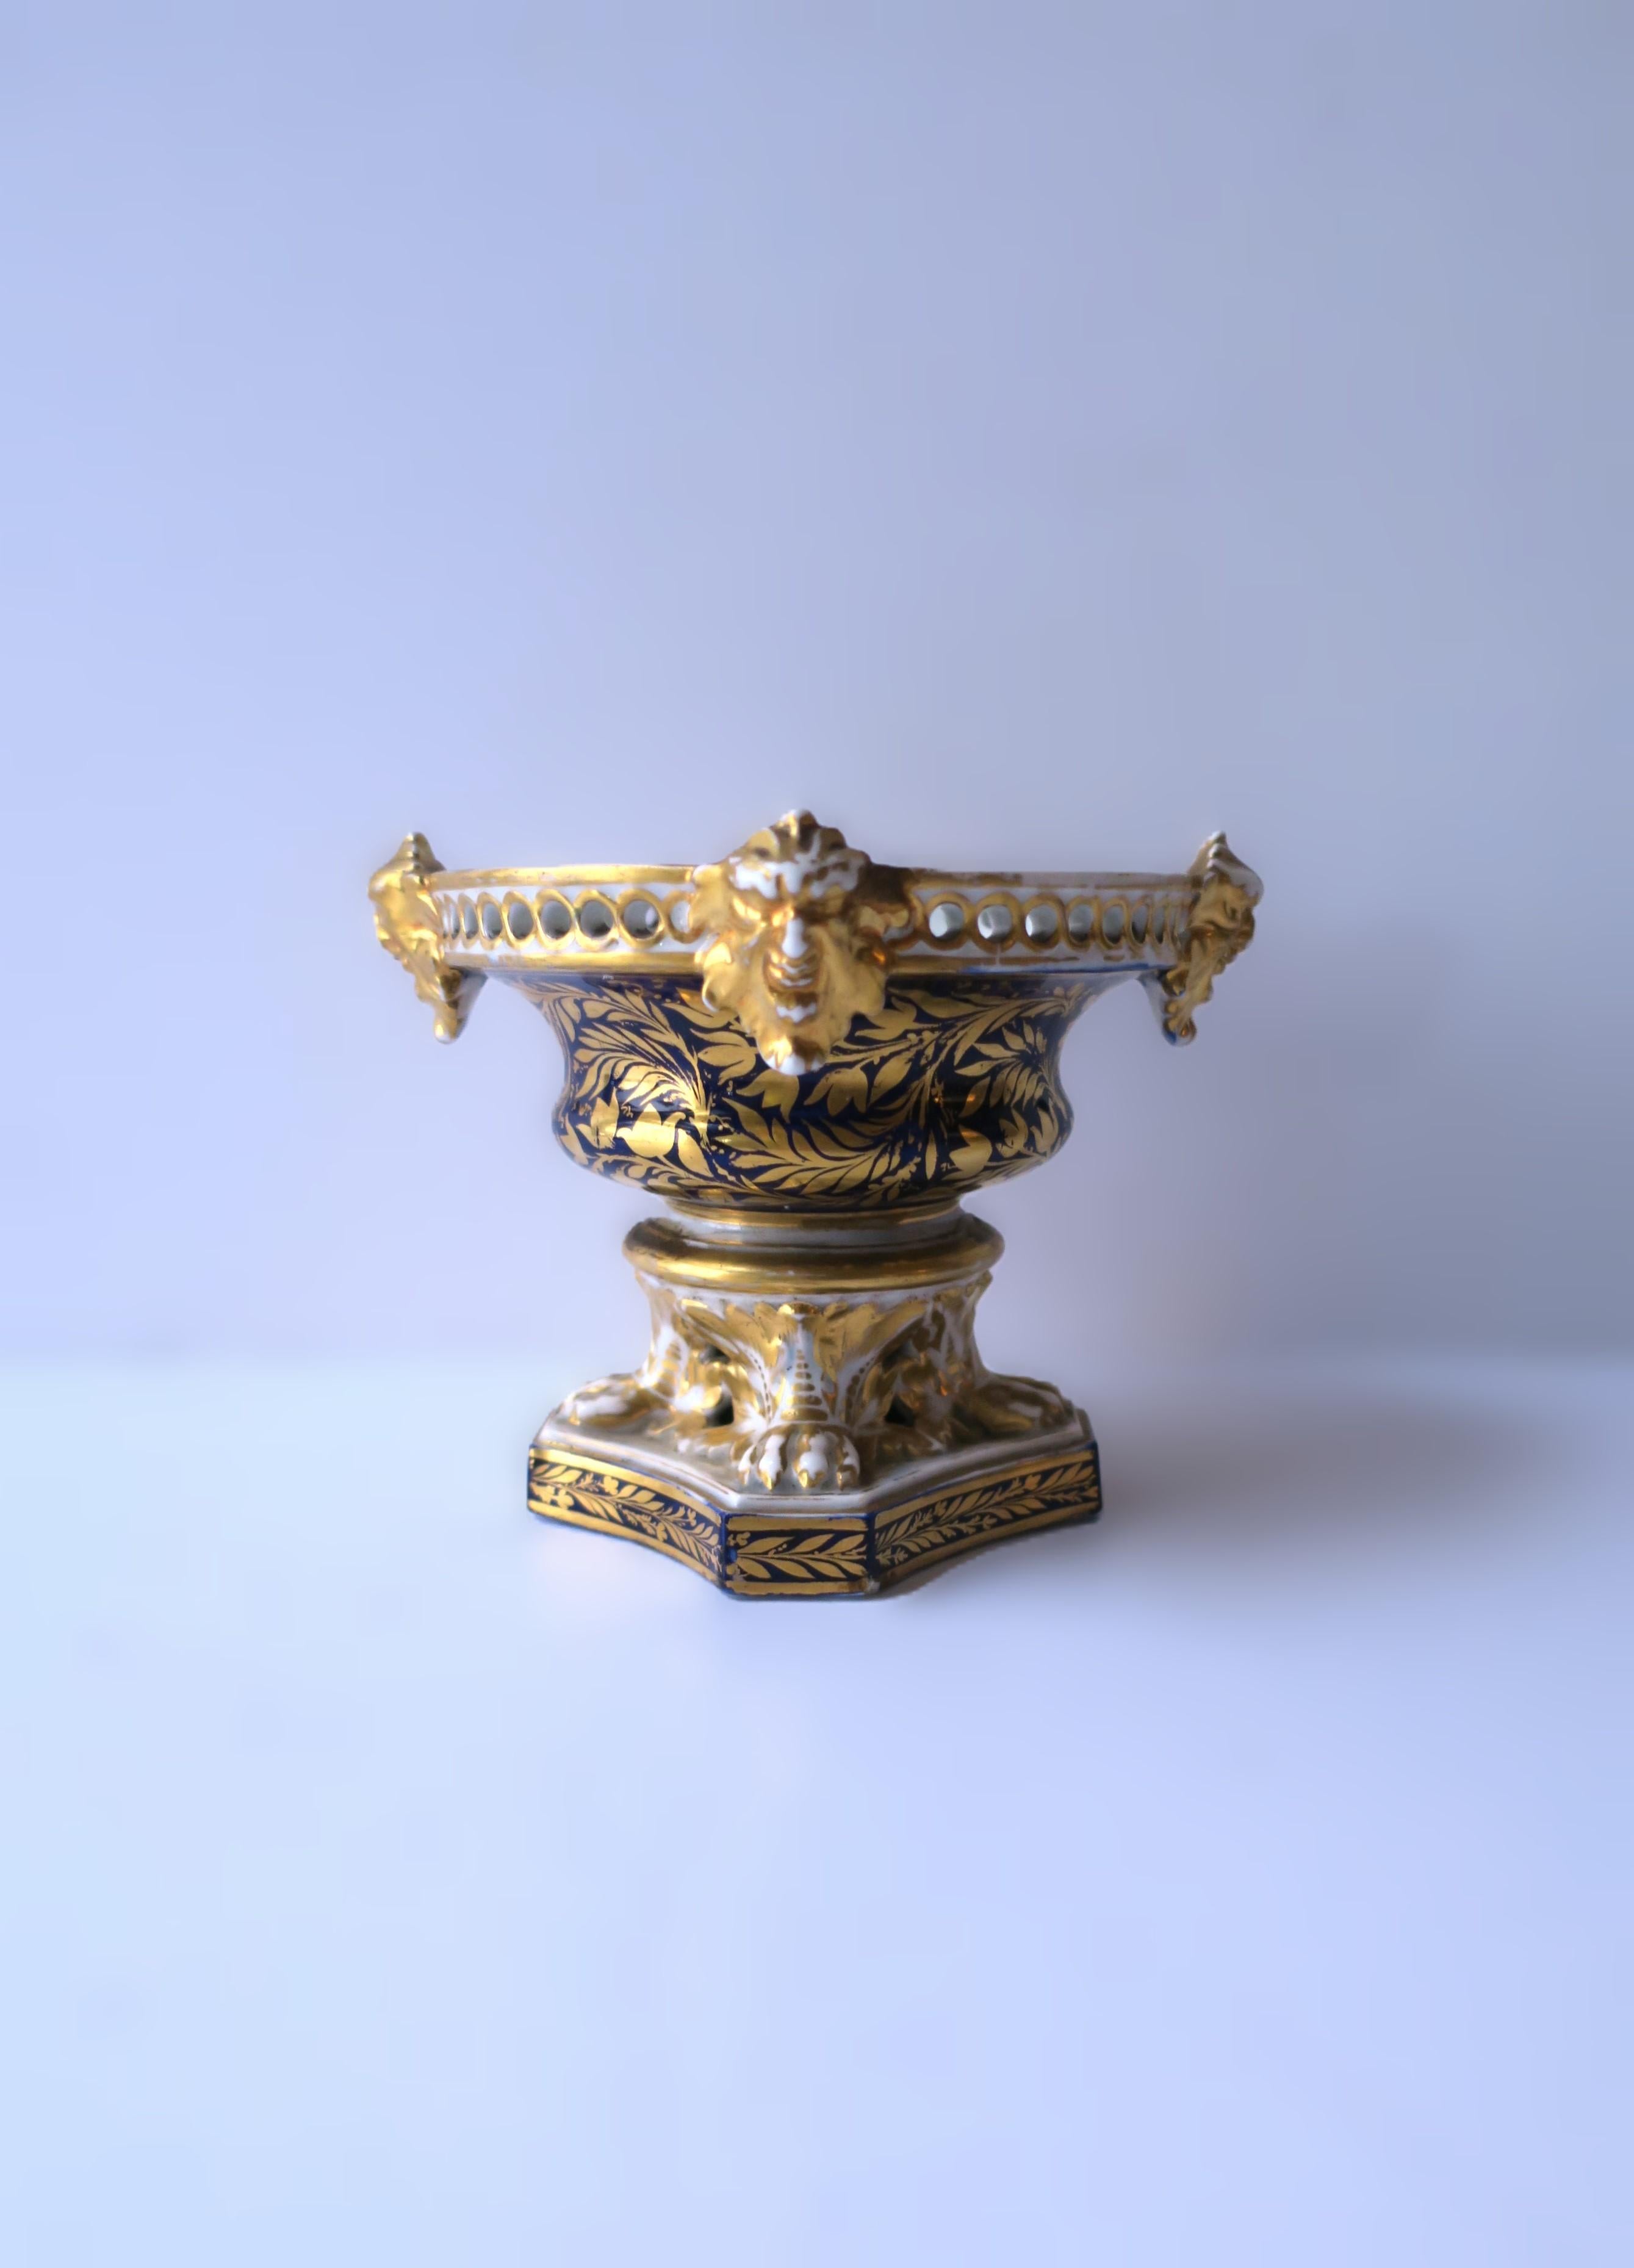 Vase à pot-pourri en porcelaine anglaise avec des têtes de divinités dorées et des pieds en forme de pattes de lion, de style Empire, par Crown Derby, vers le début du XIXe siècle, Angleterre. Les marques de fabrique rouges datent d'environ